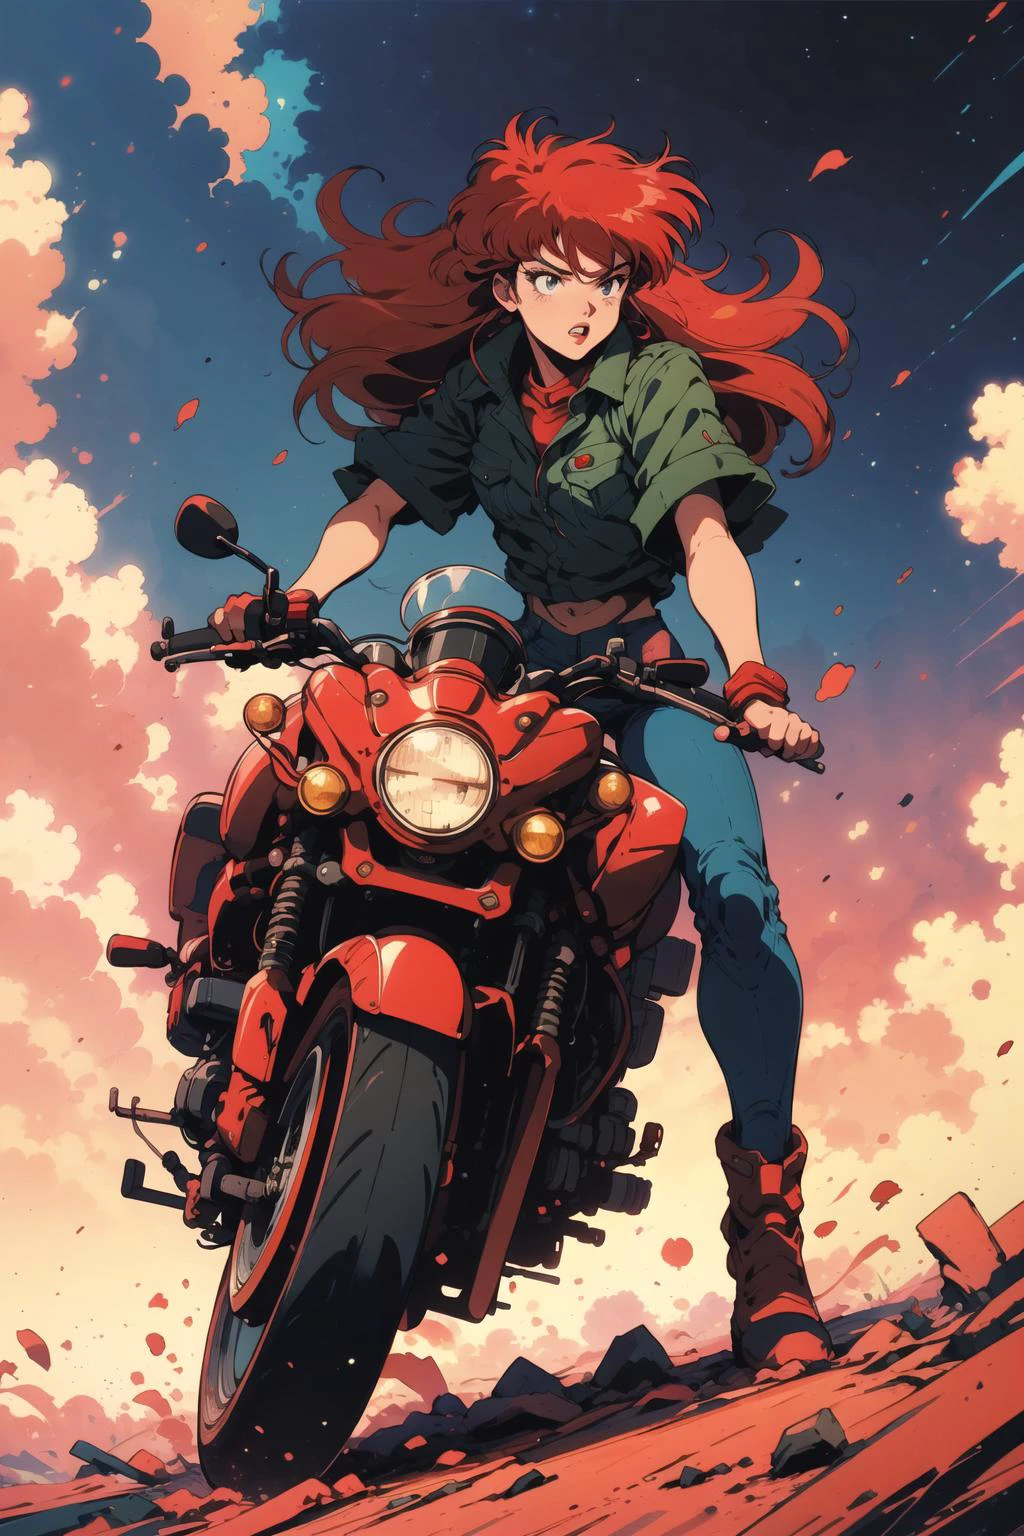 ملصق لـ souryuu Asuka Langley وهو يركب دراجة نارية, شعر احمر, مفهوم الفن,  أنيمي الرجعية, تشكل ديناميكي, رسوم متحركة, خيالي,